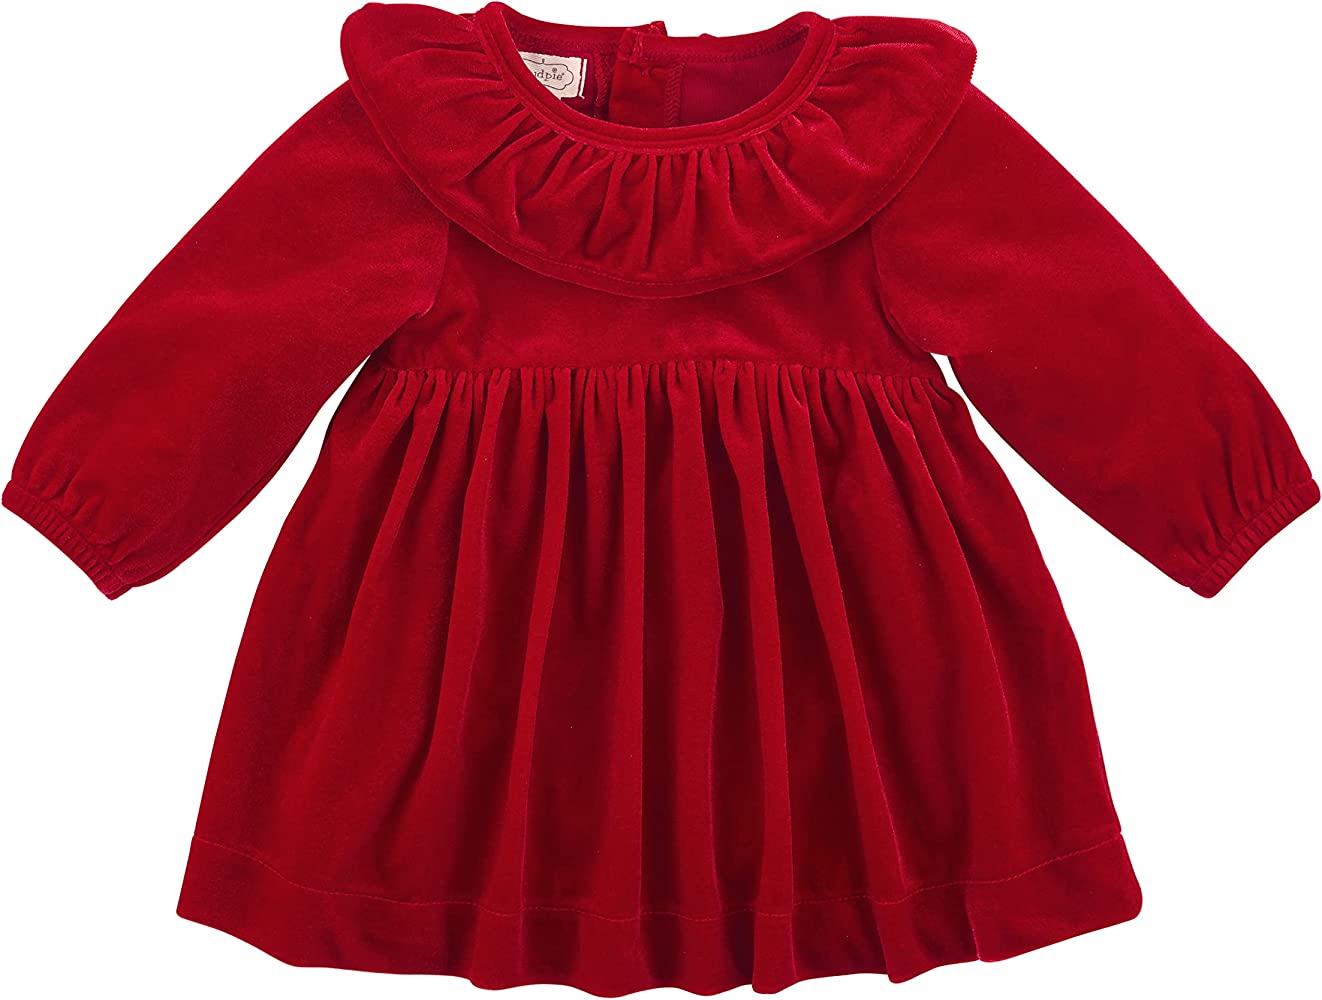 Red Velvet Baby Dress